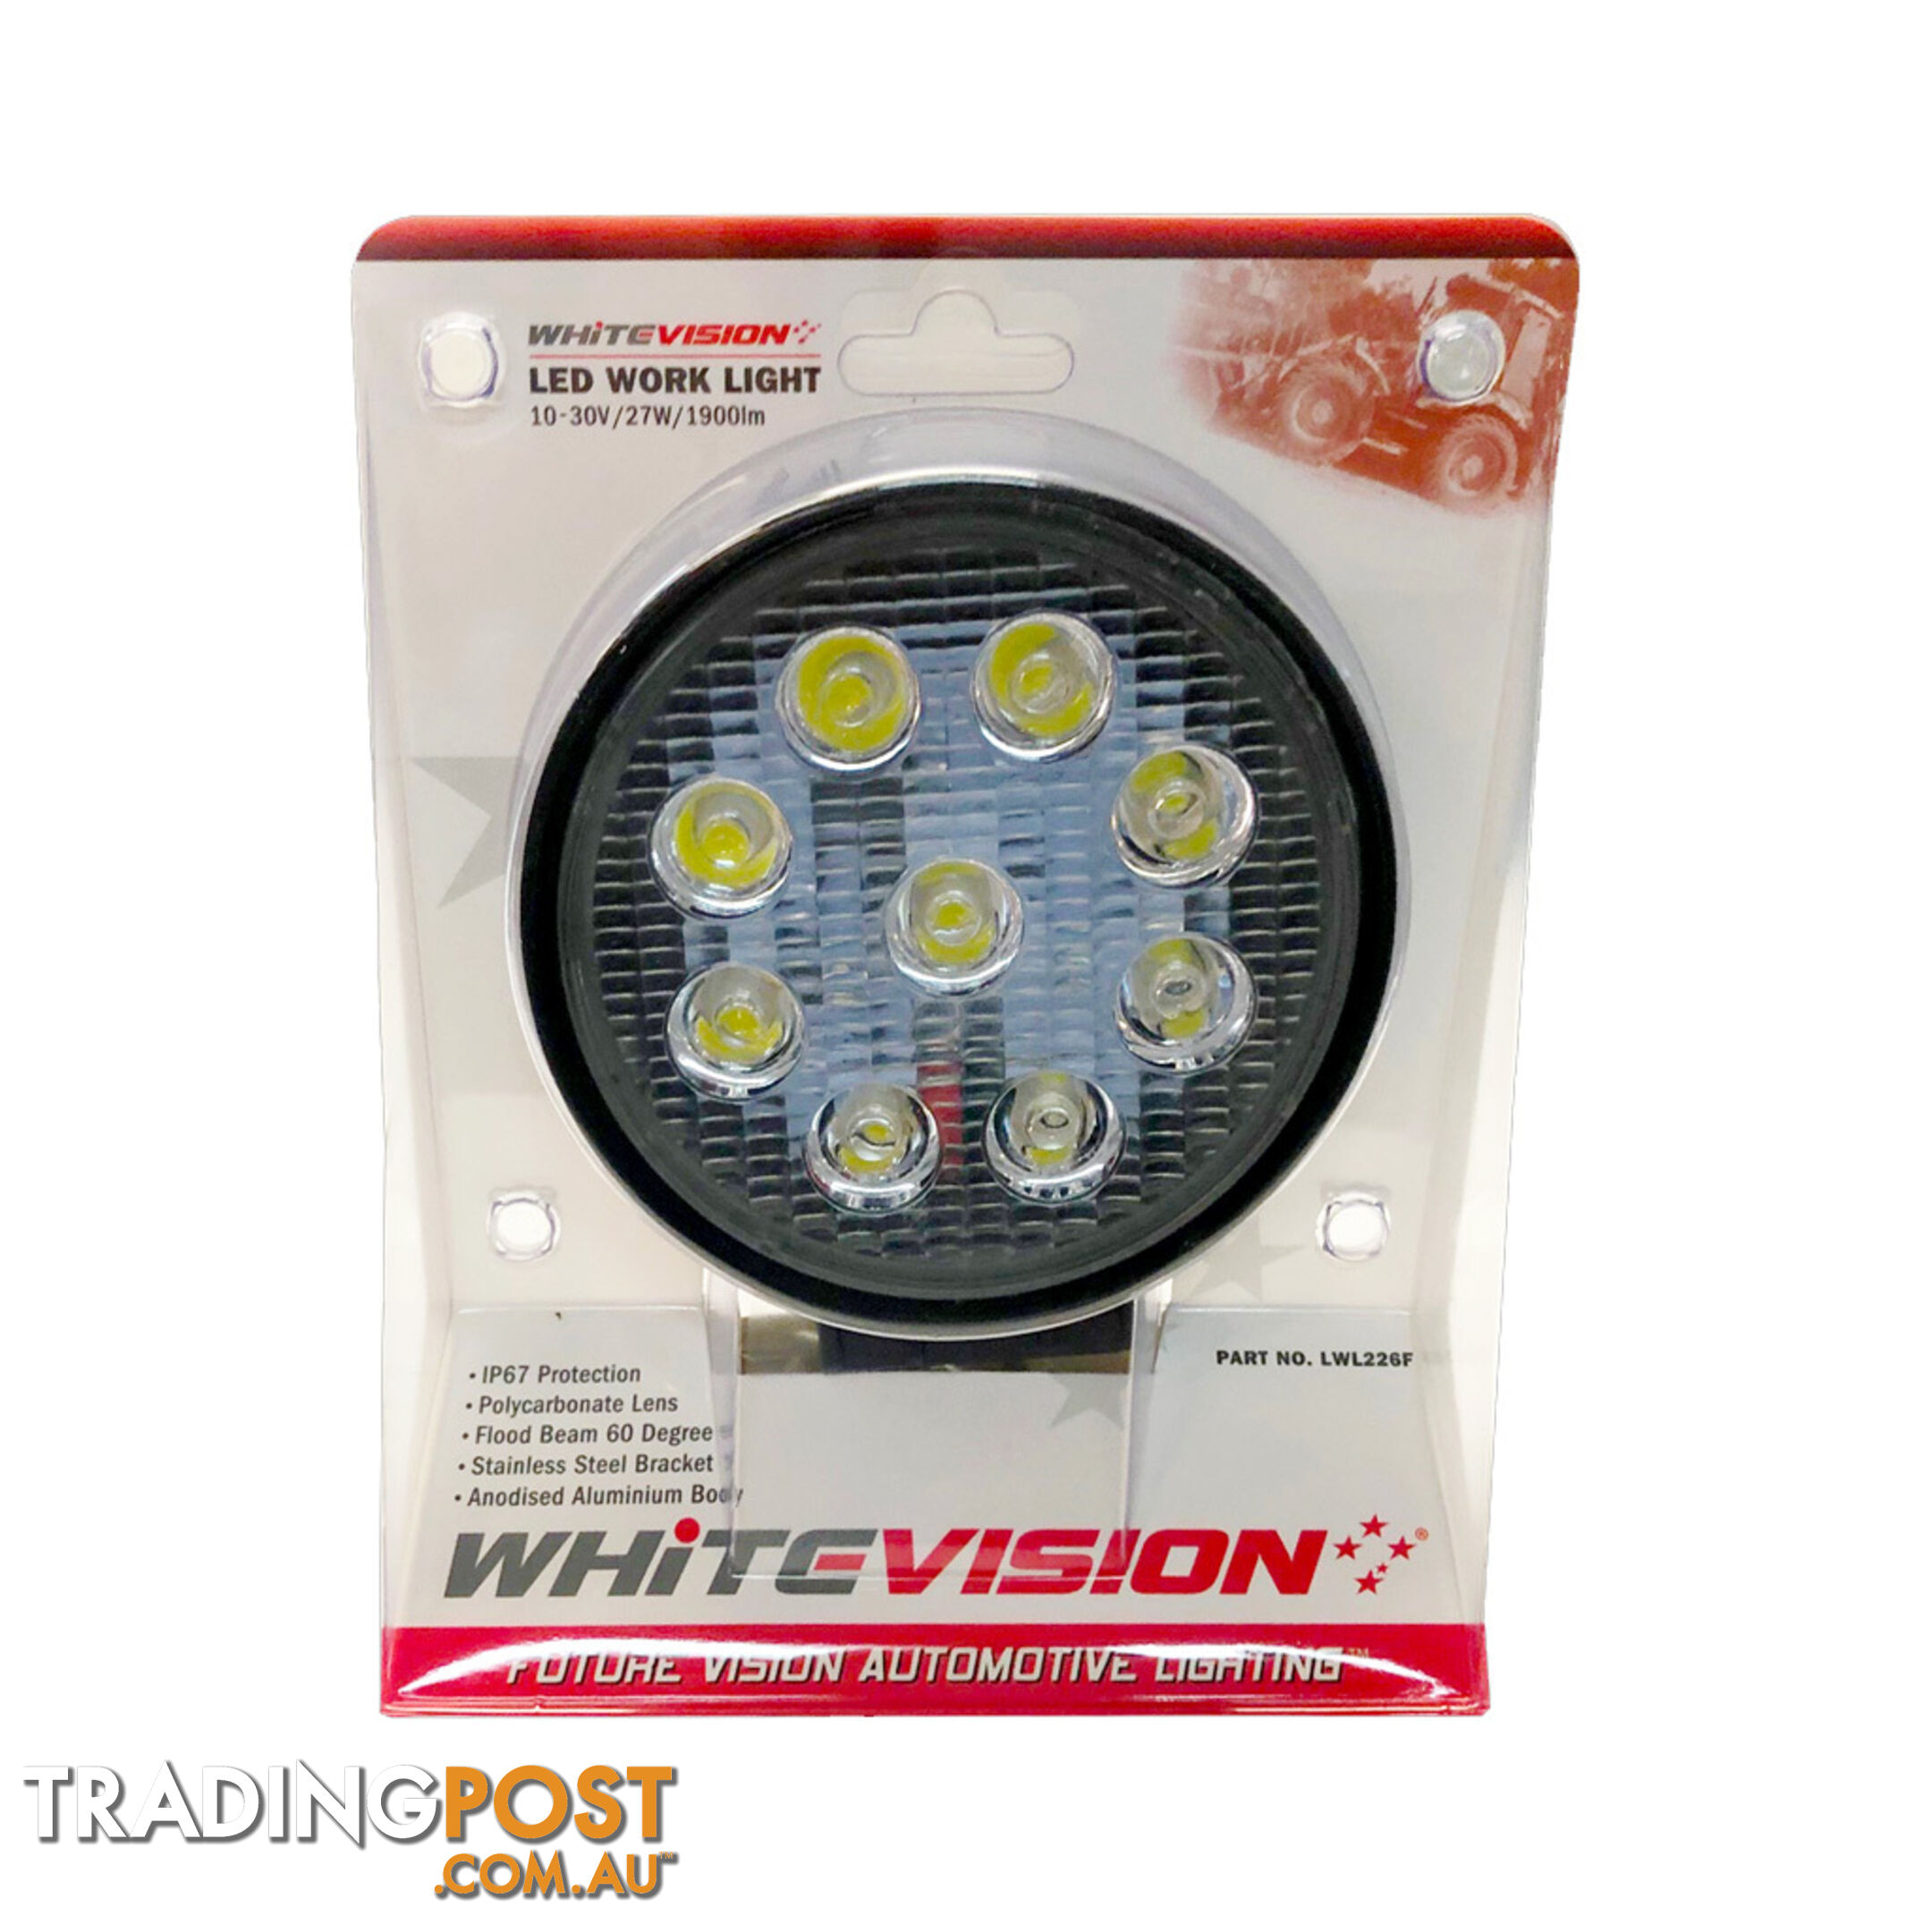 Whitevision LED Work Light 27W Flood Beam 9-30V 1800Lm SKU - LWL229F